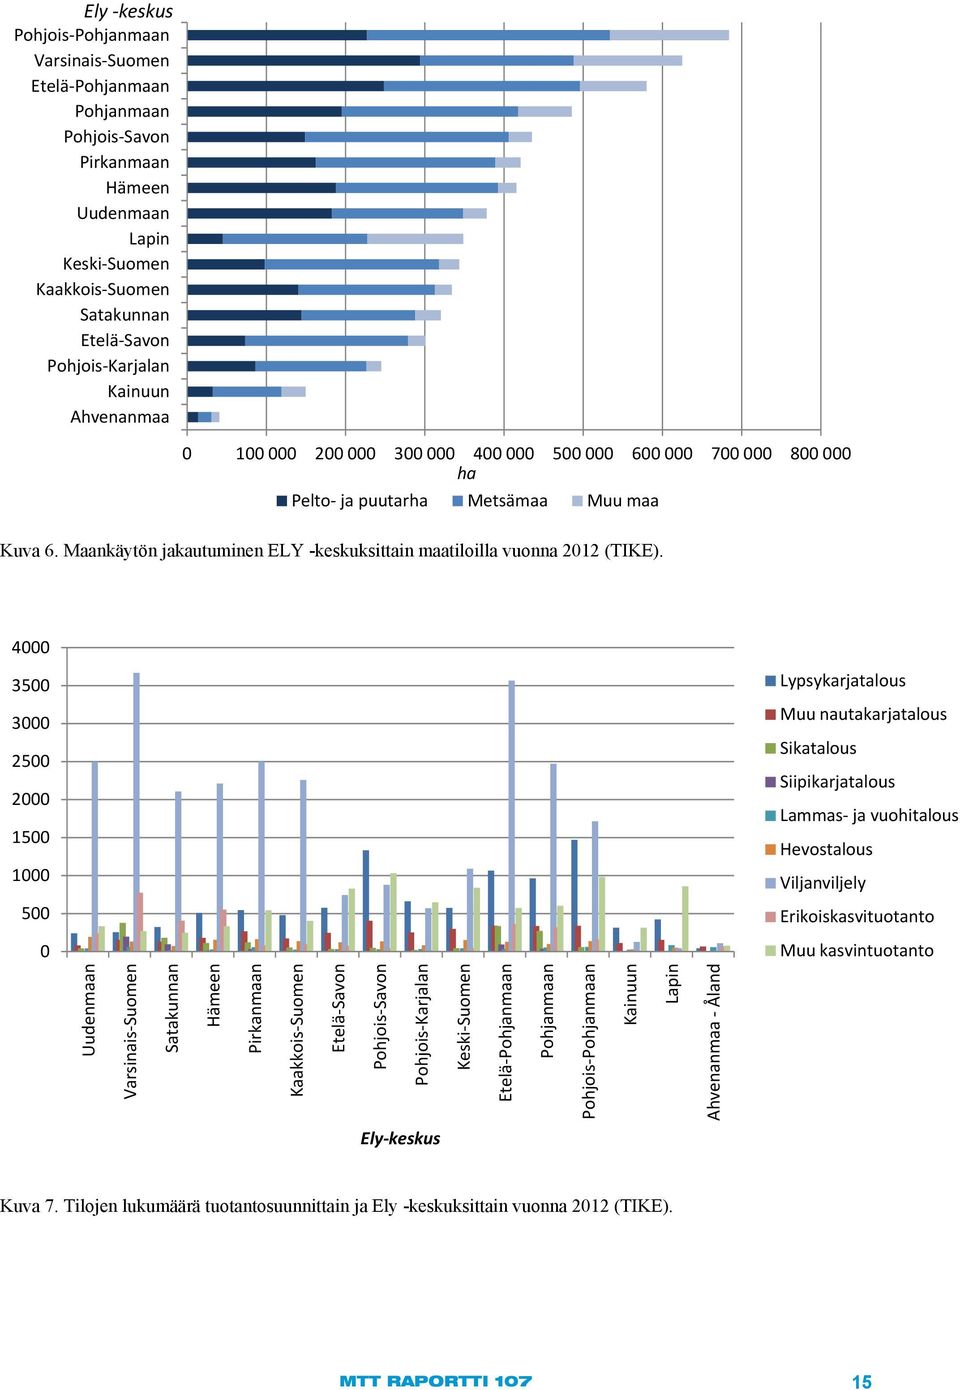 Maankäytön jakautuminen ELY -keskuksittain maatiloilla vuonna 2012 (TIKE).